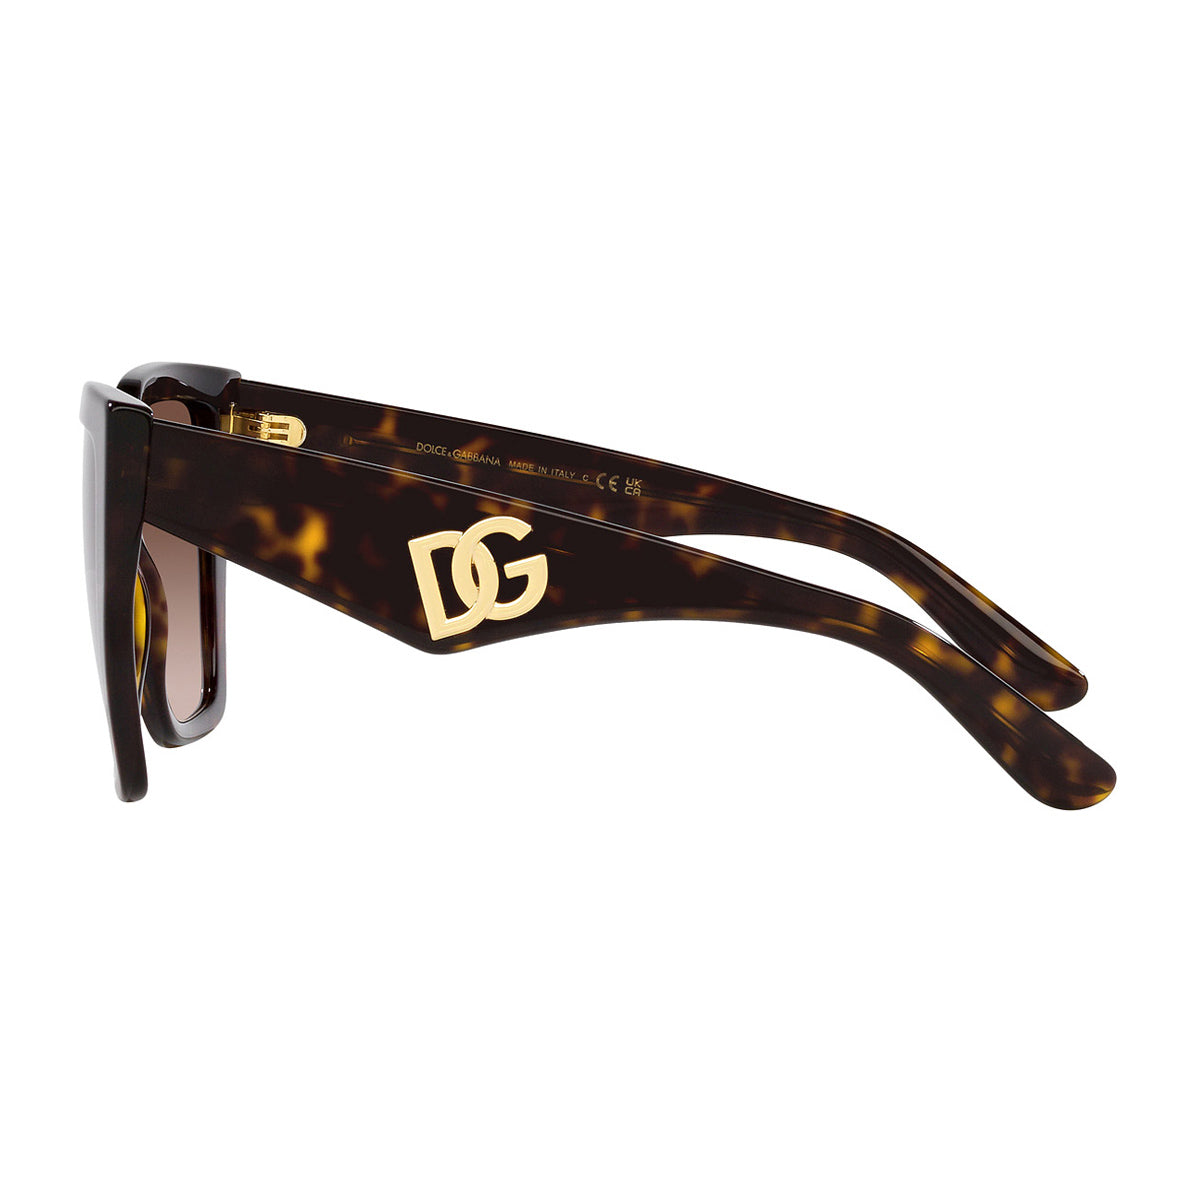 DG4438 502/13-Occhiali da sole-Dolce & Gabbana-La linea di occhiali da sole Dolce & Gabbana rappresenta un perfetto connubio tra stile ed eleganza. Il loro design è sempre all'avanguardia, caratterizzato da forme audaci e dettagli unici che attirano l'attenzione. La nuova collezione DG Crossed rivisita l'iconico logo posizionandolo in modo asimmetrico nell'angolo centrale di una sola asta, conferendo un fascino irresistibile. Questo modello in acetato presenta un design squadrato oversize, arricchito dall'e